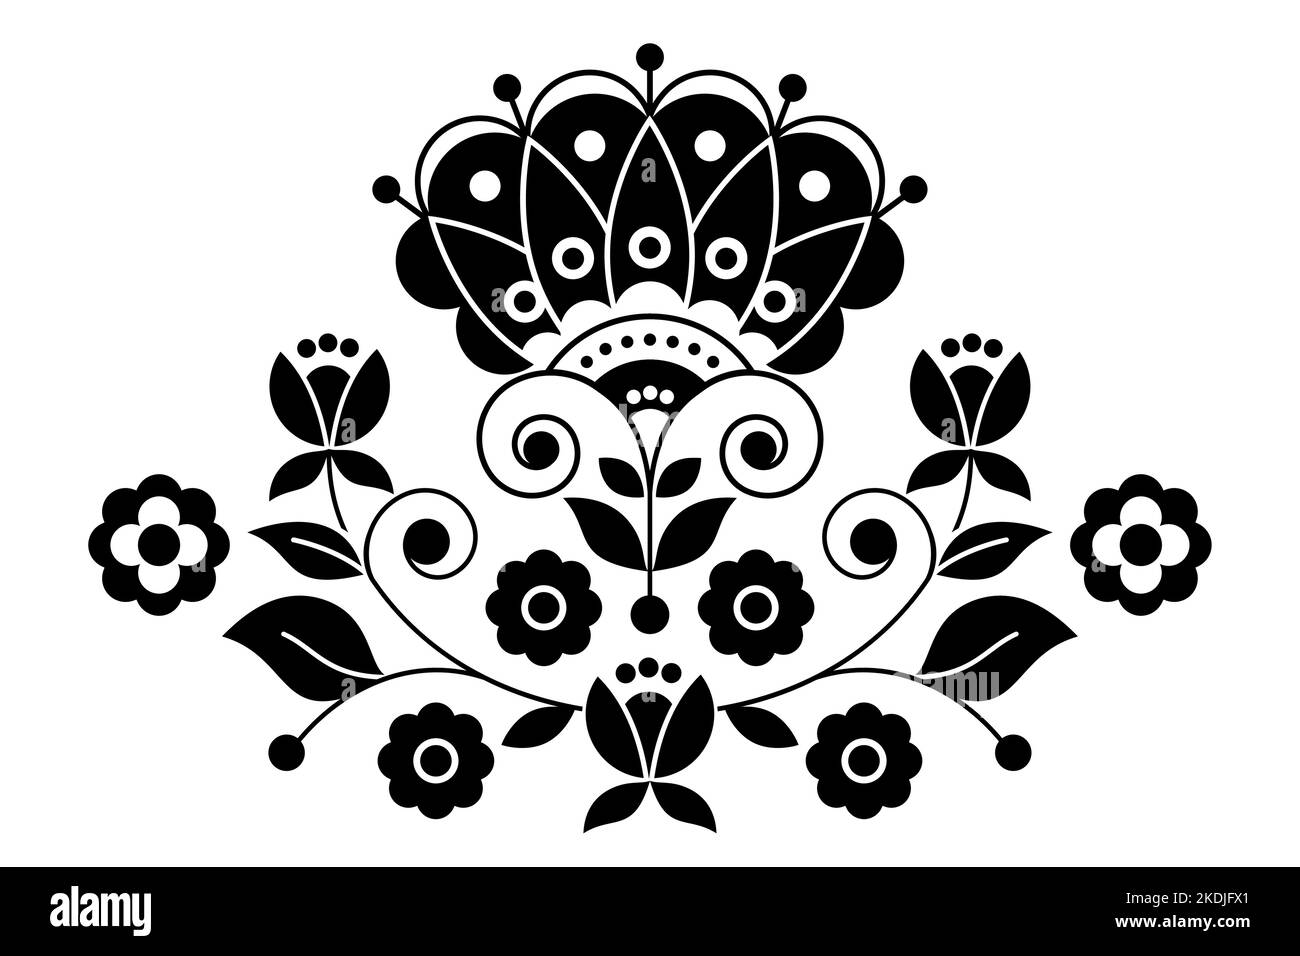 Skandinavische, nordische Volkskunst Vektor schwarz-weißes Muster mit Blumenmotiv inspiriert von traditionellen Stickereien aus Schweden - Grußkarte Stock Vektor